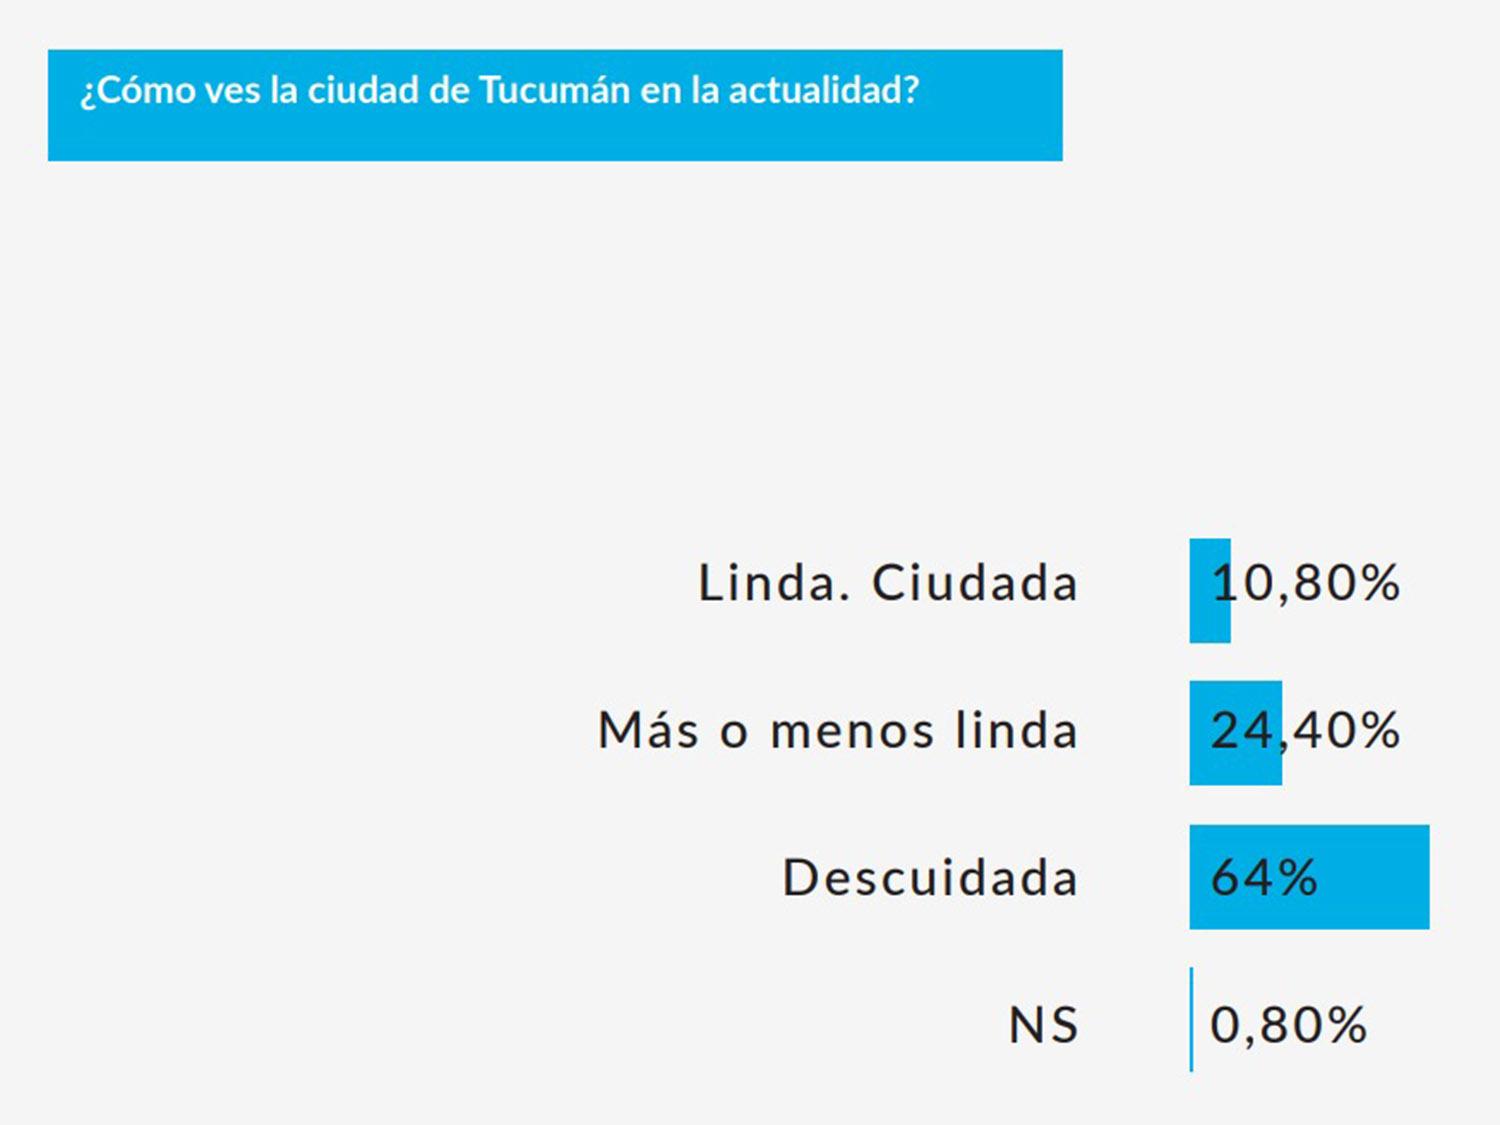 Basurales: el 64% de los tucumanos piensa que San Miguel de Tucumán está descuidada